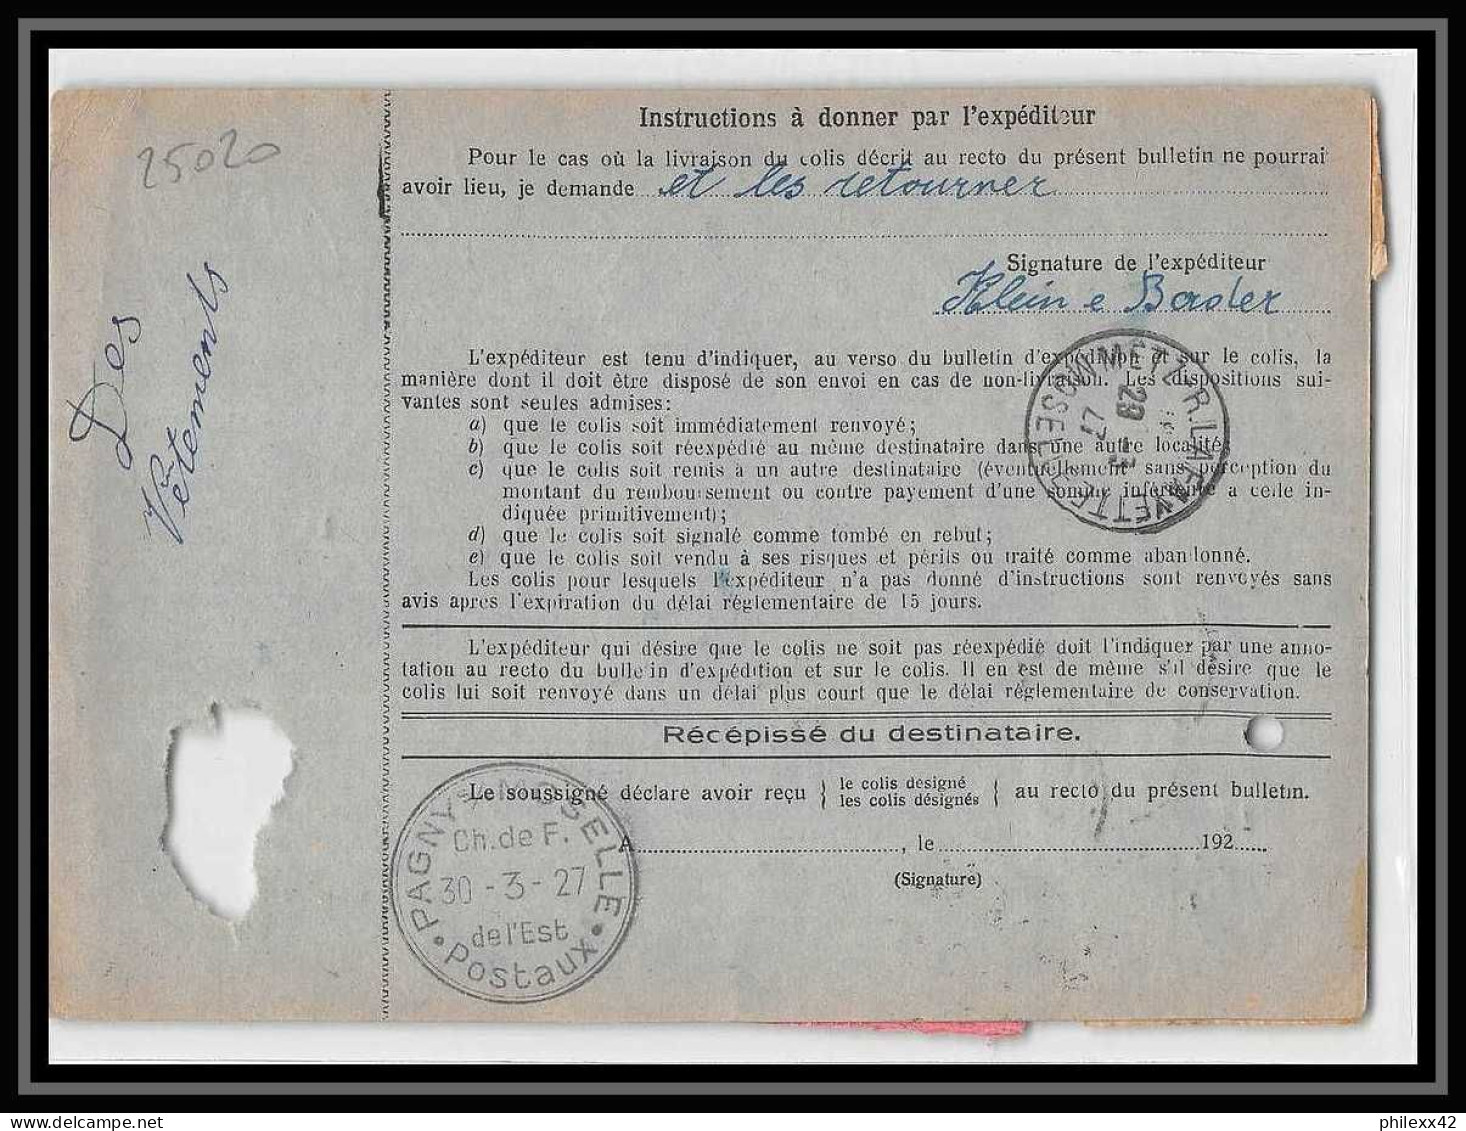 25020 Bulletin D'expédition France Colis Postaux Fiscal Haut Rhin 1927 Guebwiller Semeuse Merson 123 Valeur Déclarée - Lettres & Documents